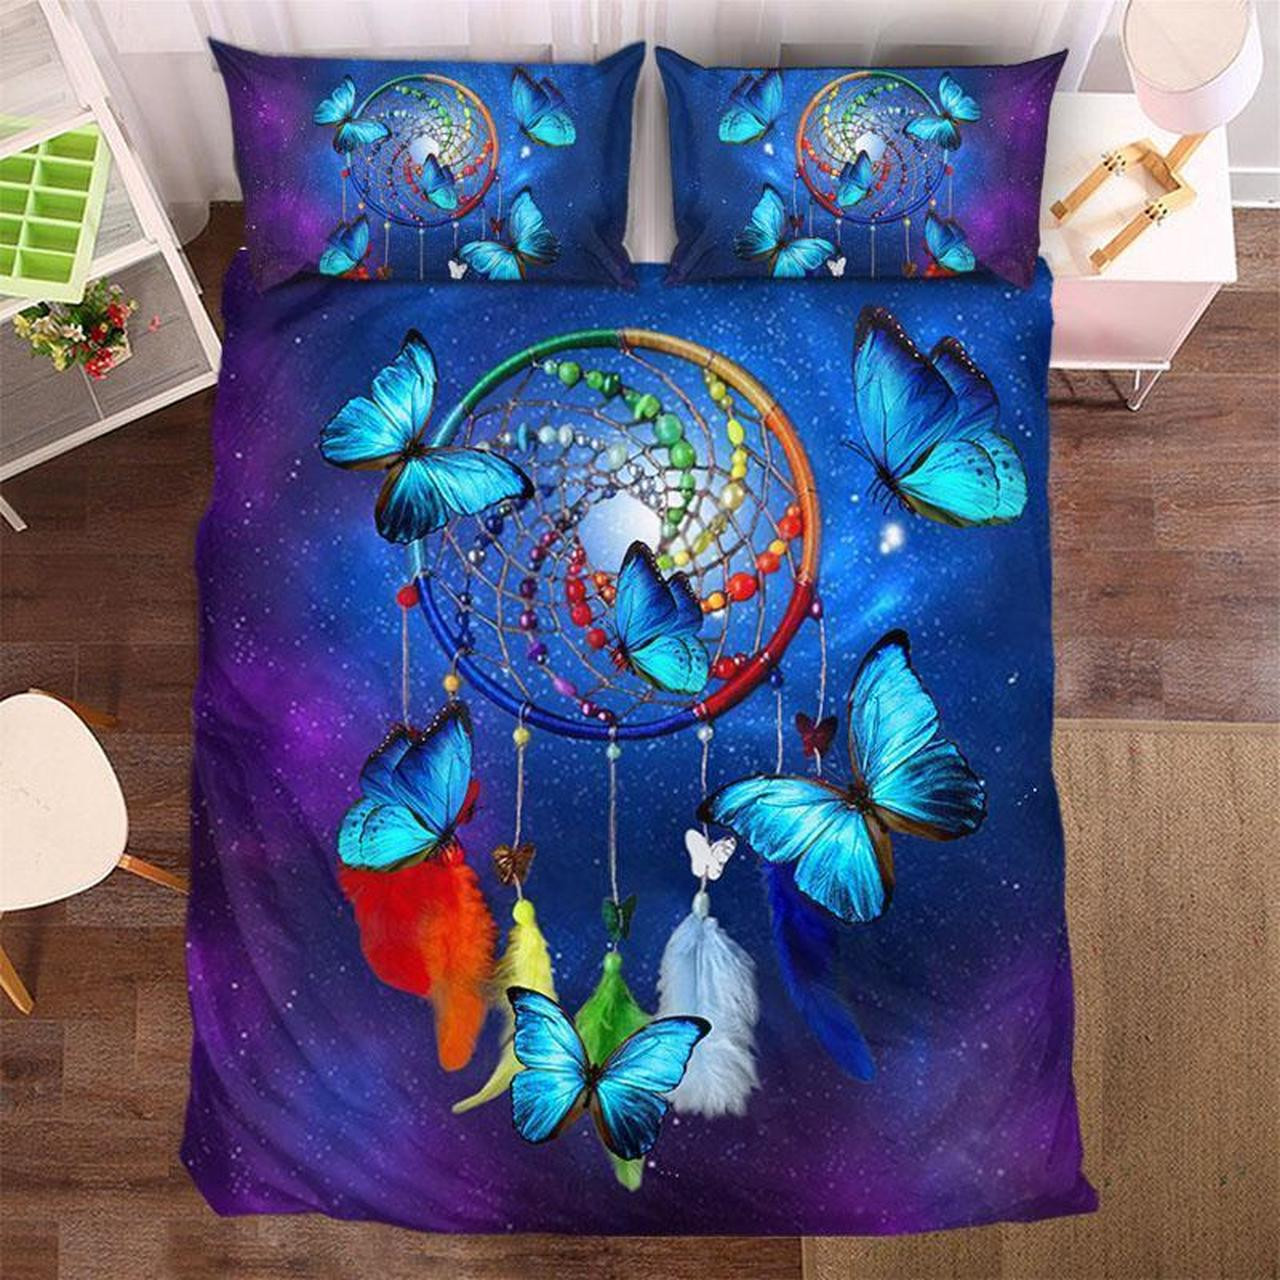 rainbow dreamcatcher butterfly 09285 bedding set cover kt9cs